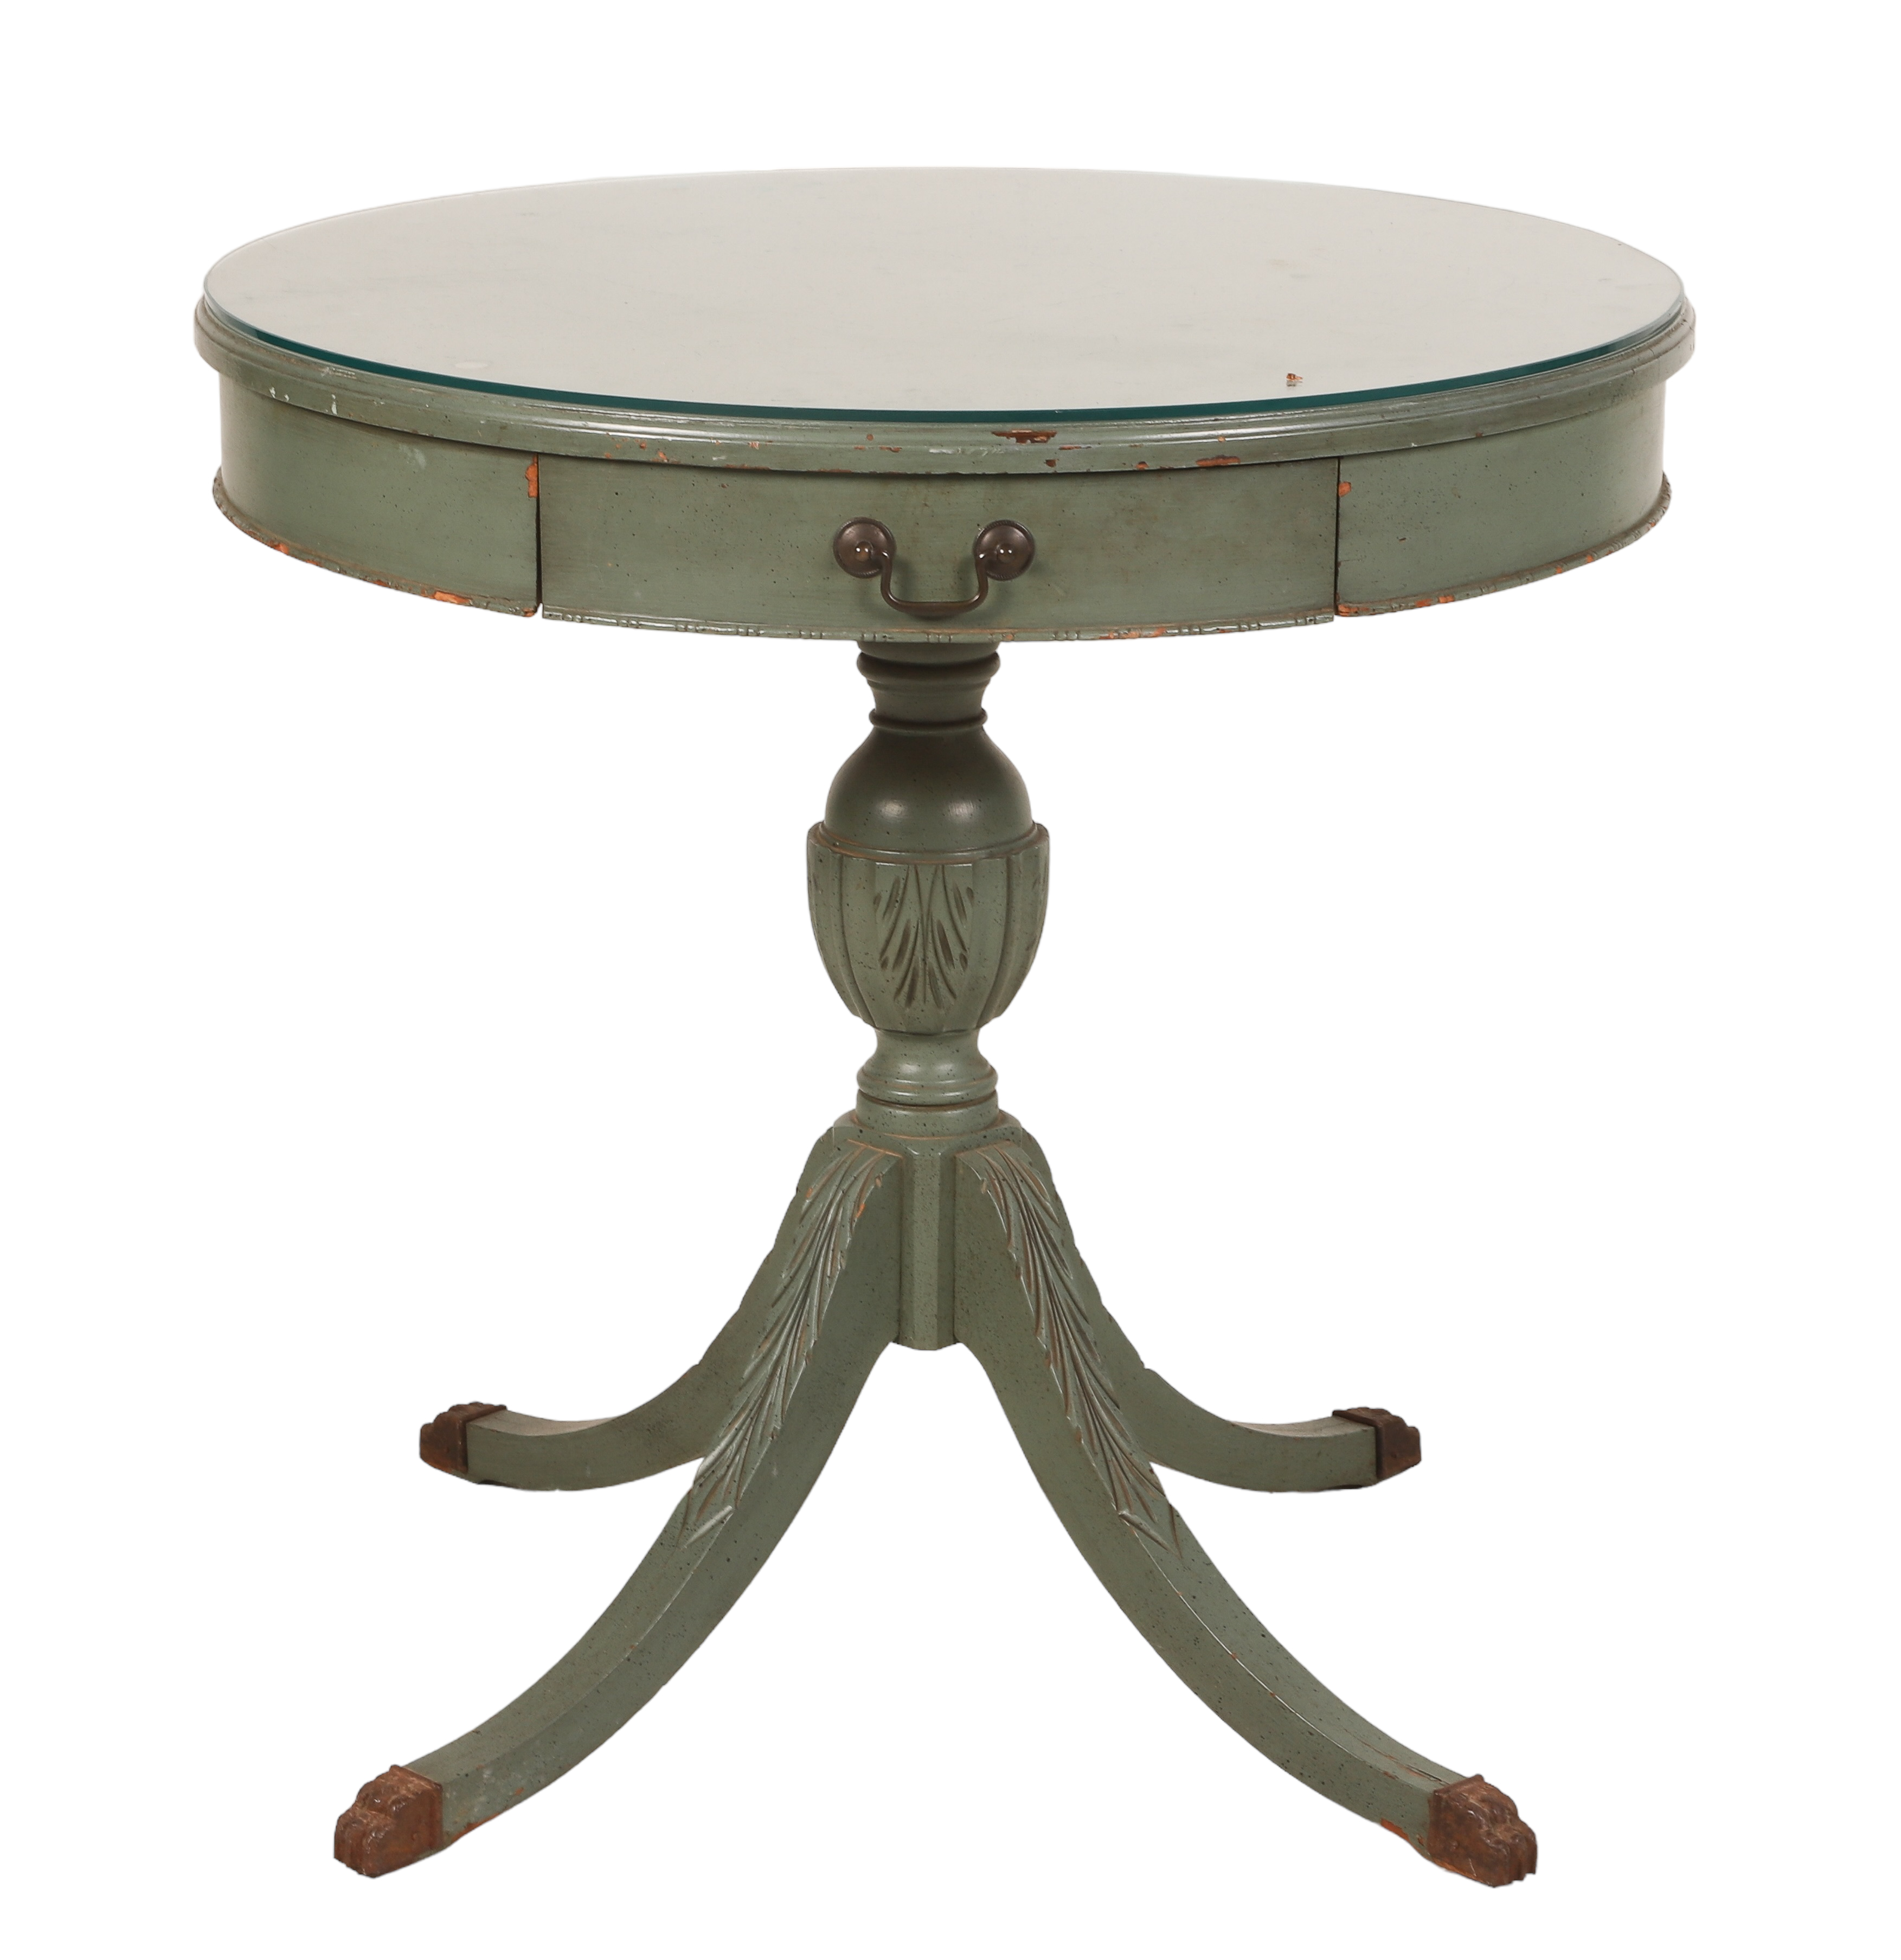 Regency style painted drum table,